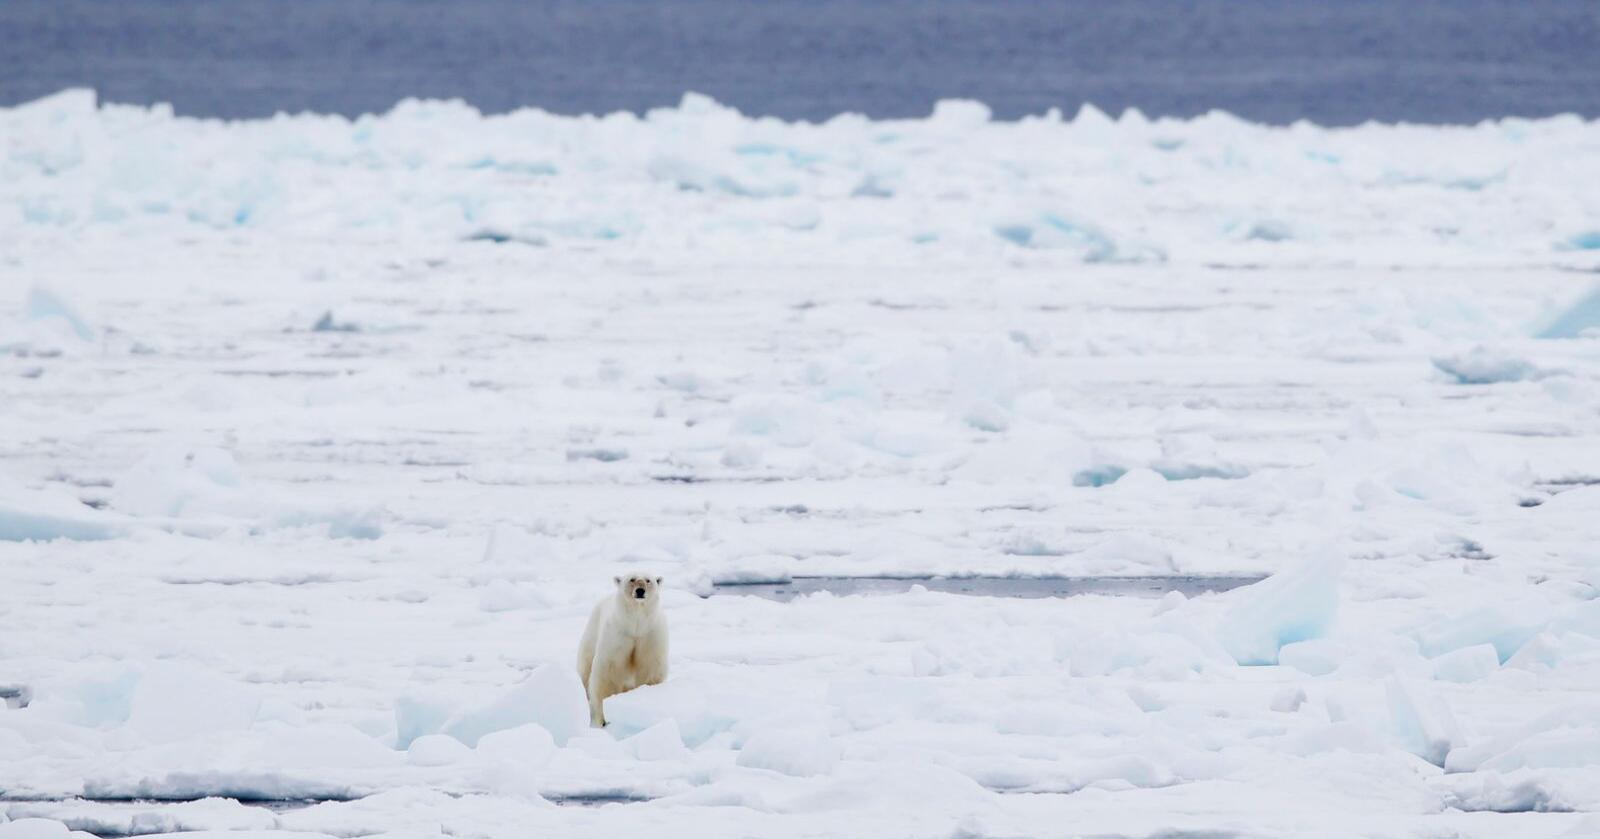 Havisen rundt Svalbard har sunket kraftig siden mai og er langt under normalen. Det er negativt for isbjørnen, som trenger isen for å overleve. Foto: Håkon Mosvold Larsen / NTB